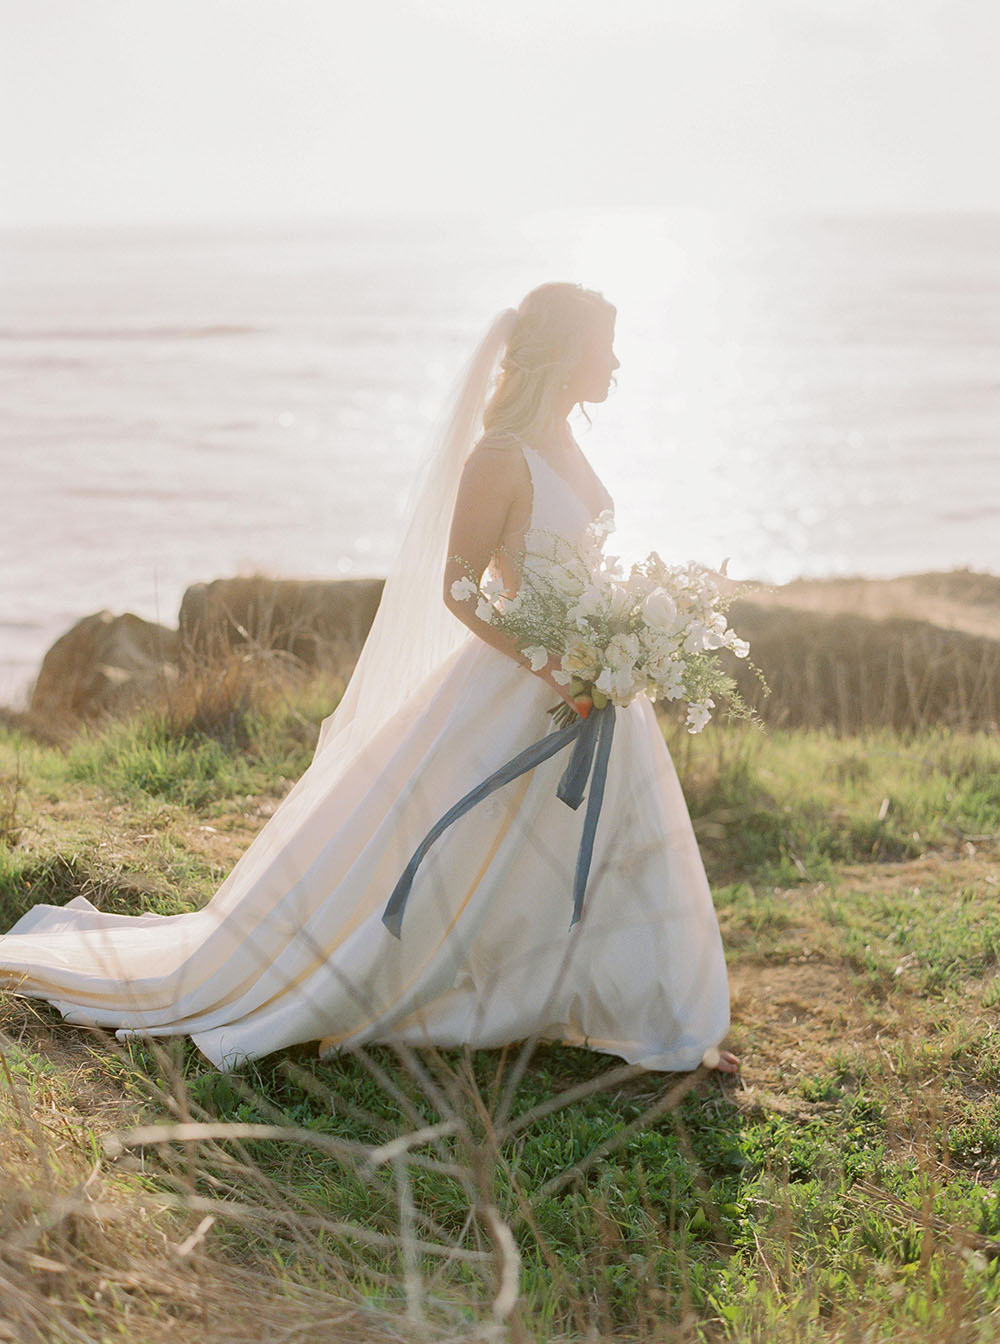 Chân dung cô dâu bỏ trốn ở Bờ biển Thái Bình Dương với bó hoa trắng hoang dã và dải ruy băng xanh bụi